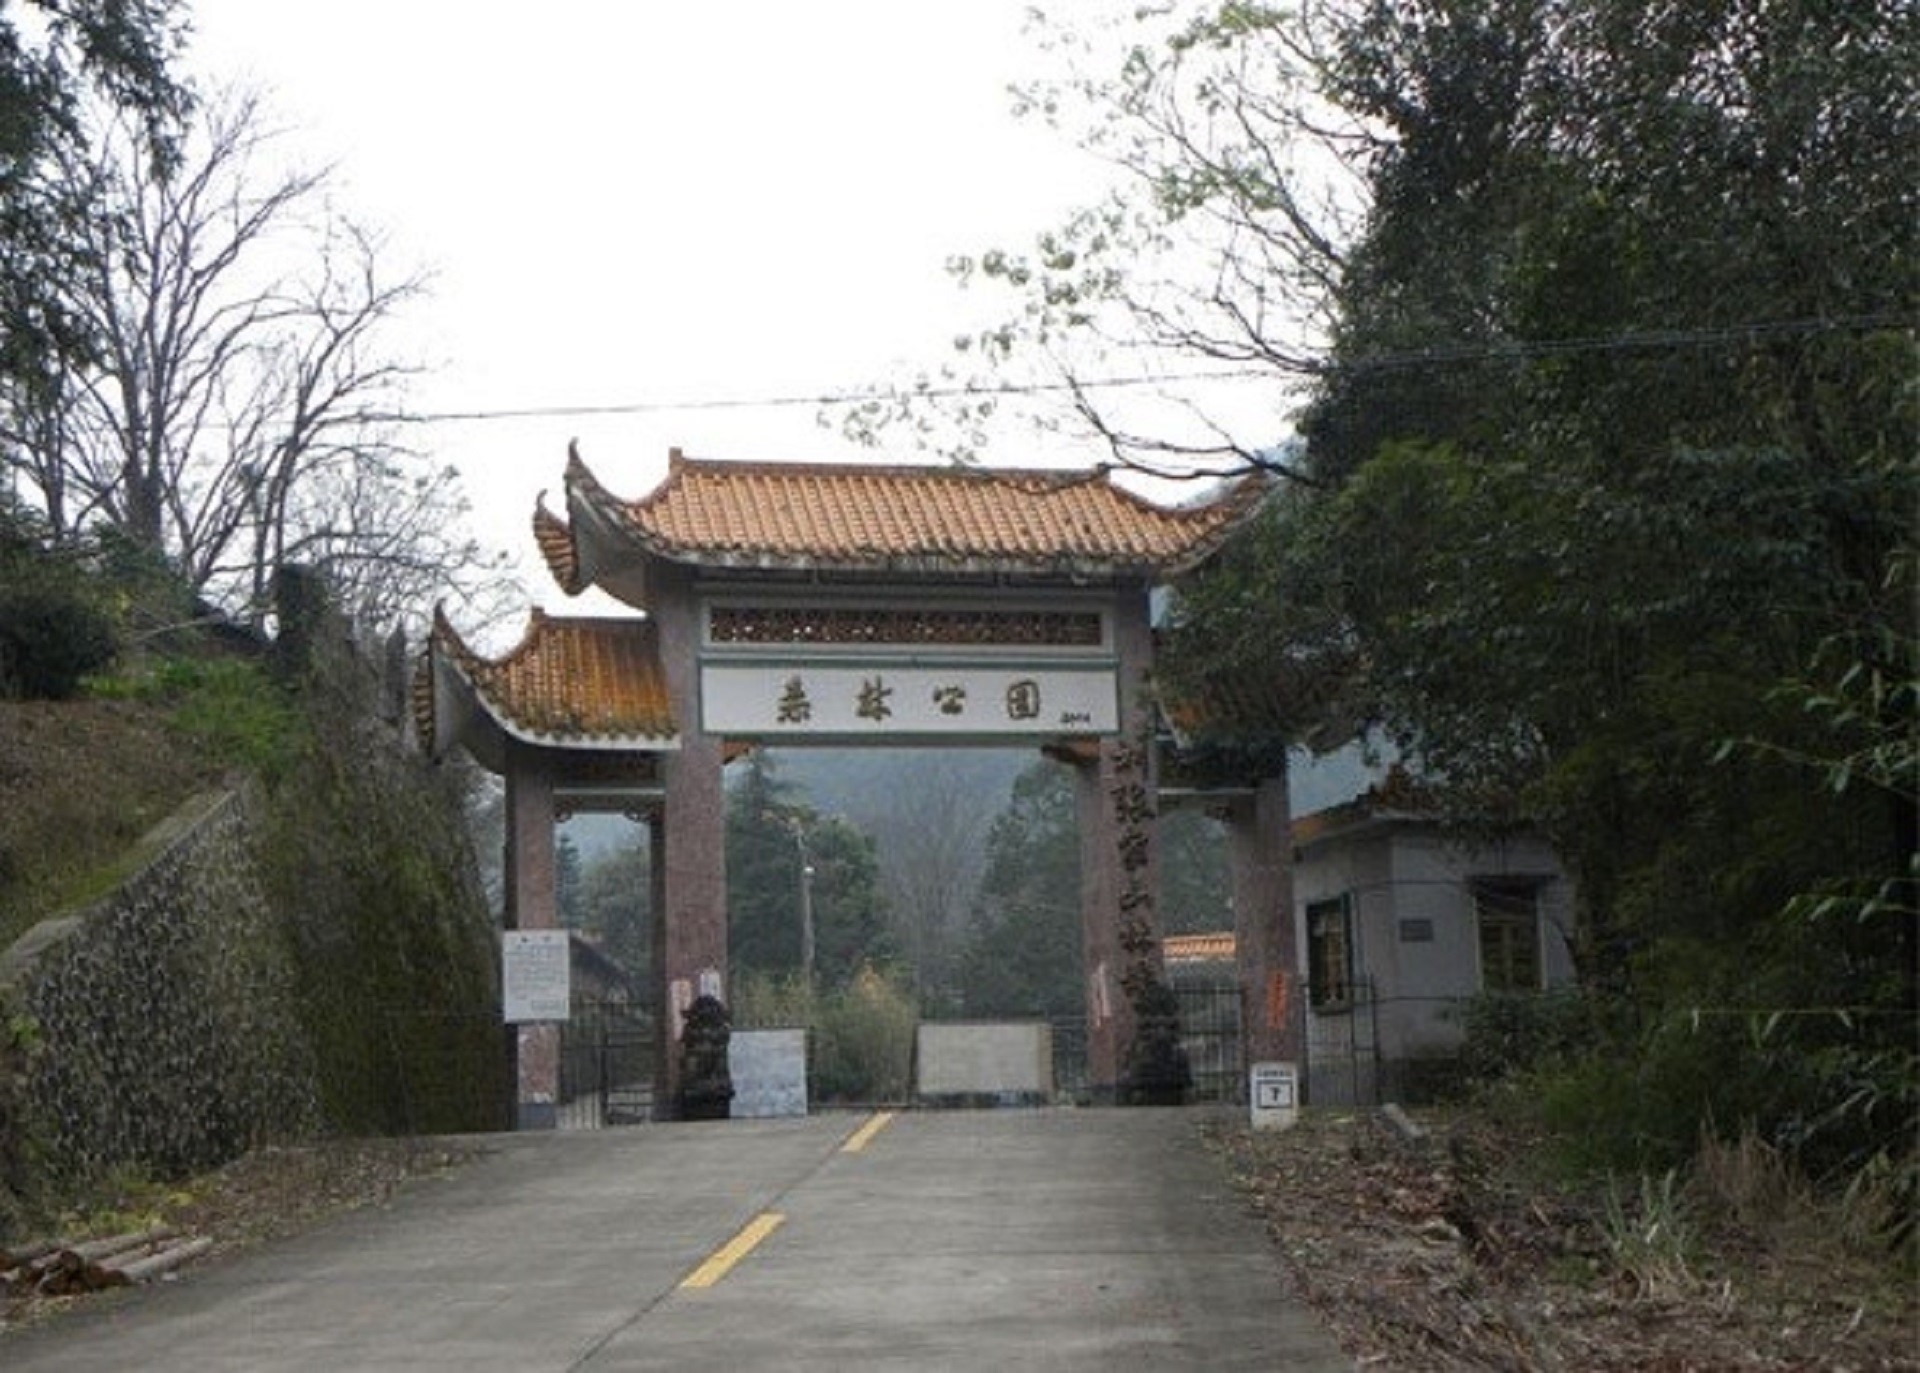 刘张家山林场省级森林公园